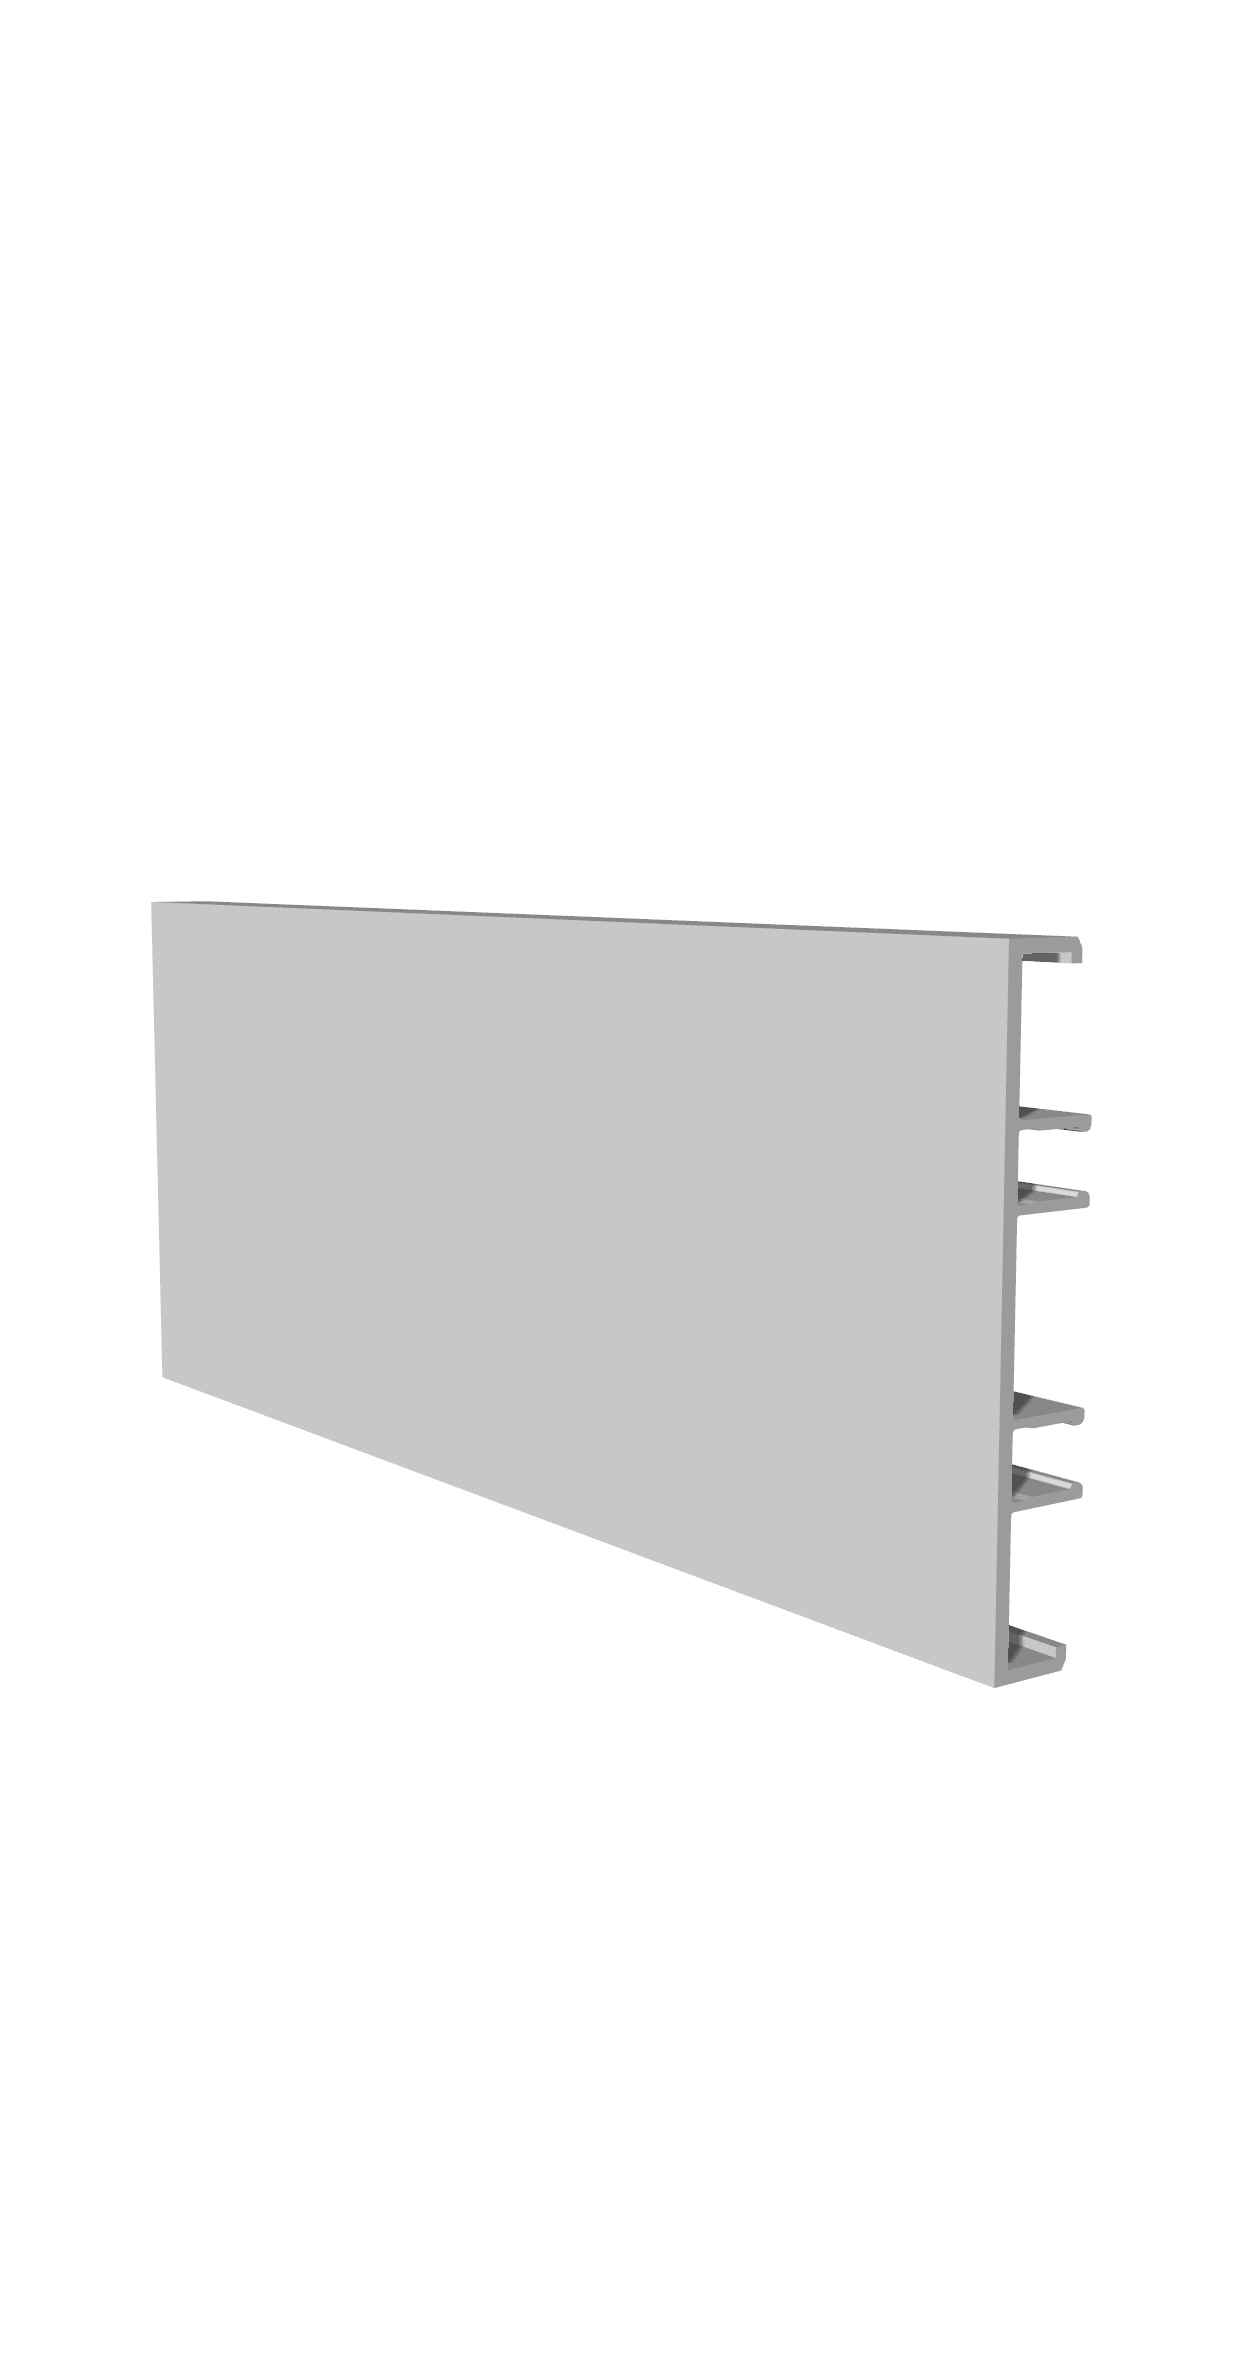 100 series | Aluminum profile system interior cladding facades